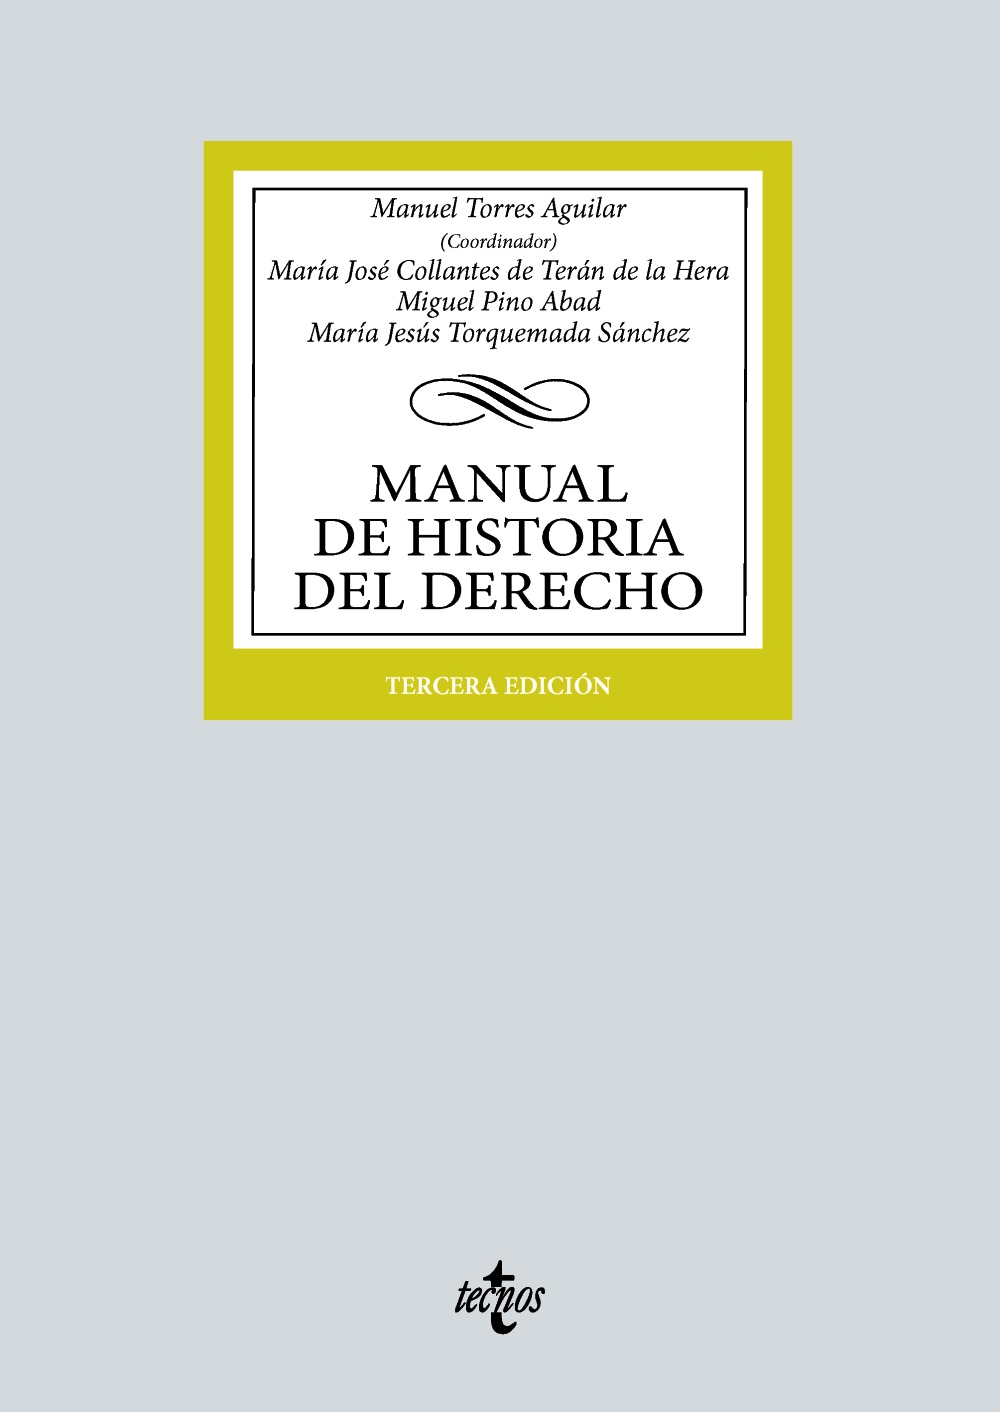 PACK Manual de Historia del Derecho. 9788430988198